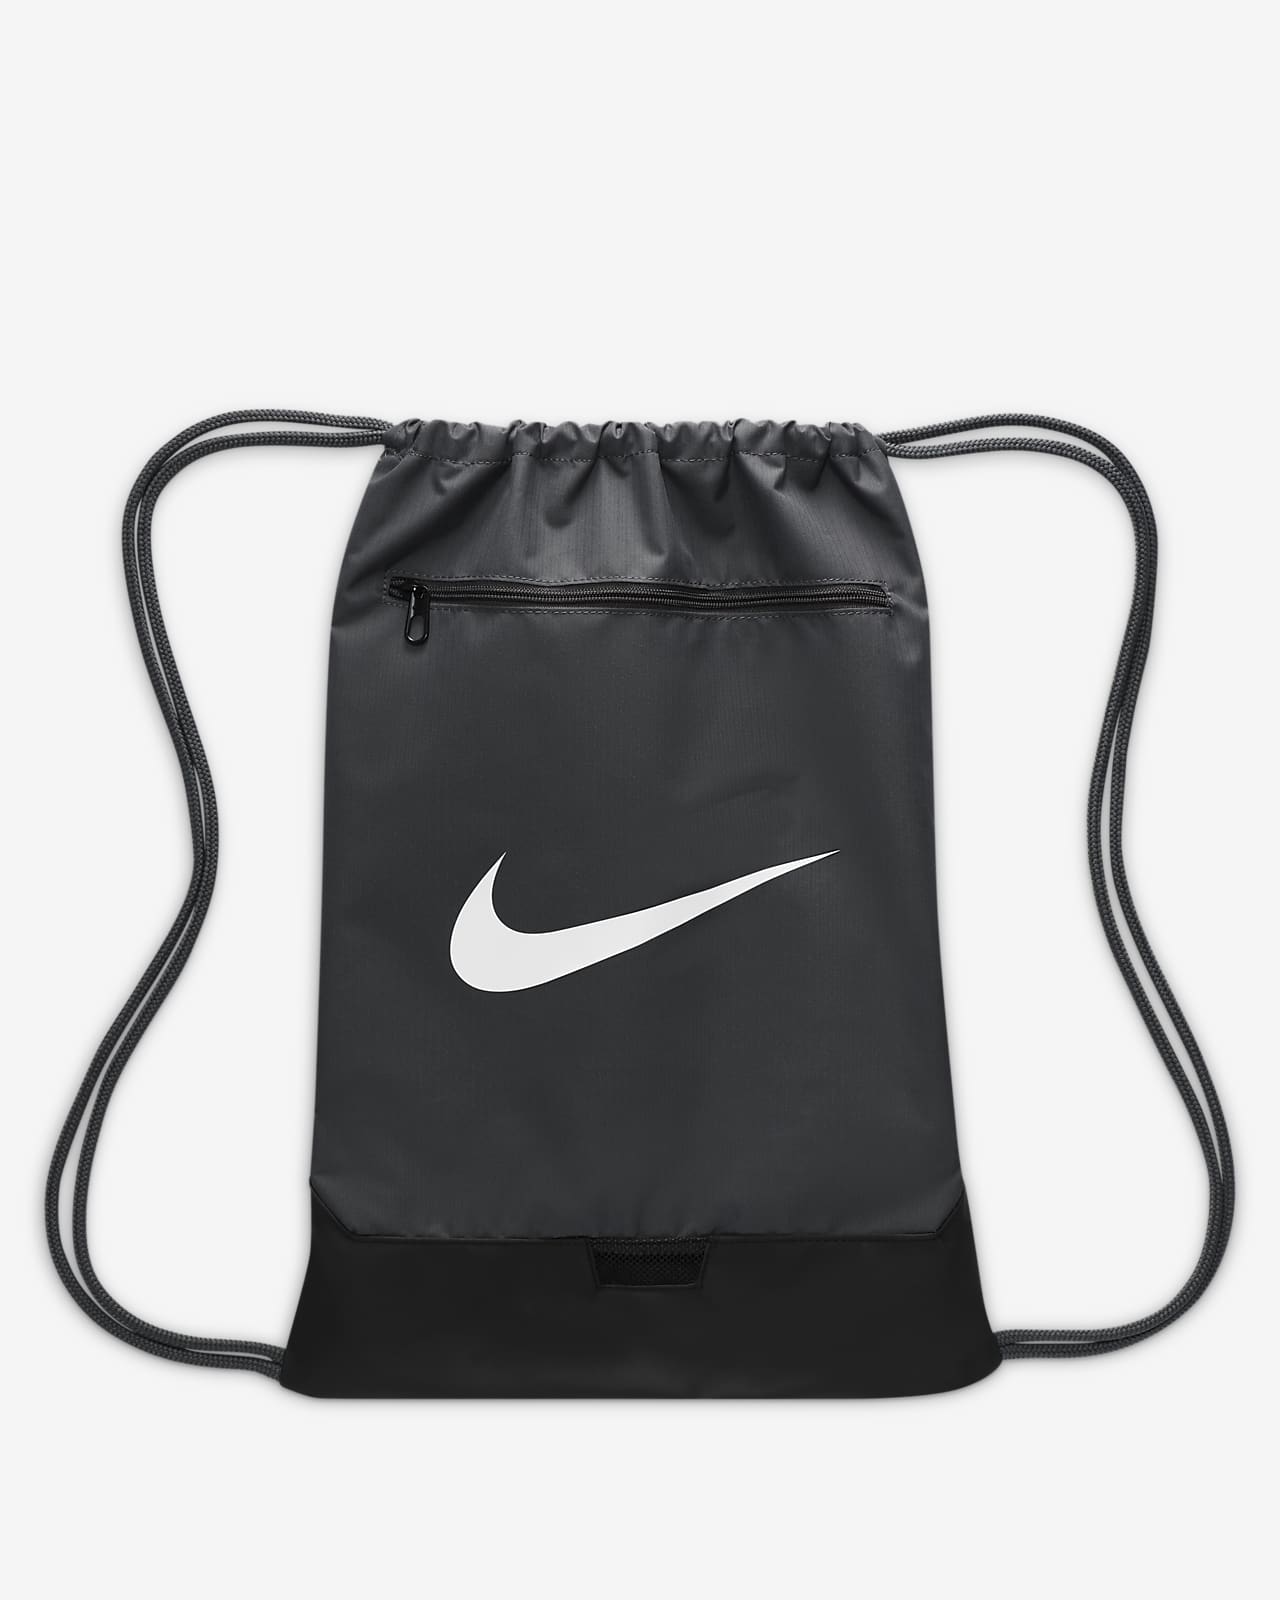 Σακίδιο γυμναστηρίου και προπόνησης Nike Brasilia 9.5 (18 L)